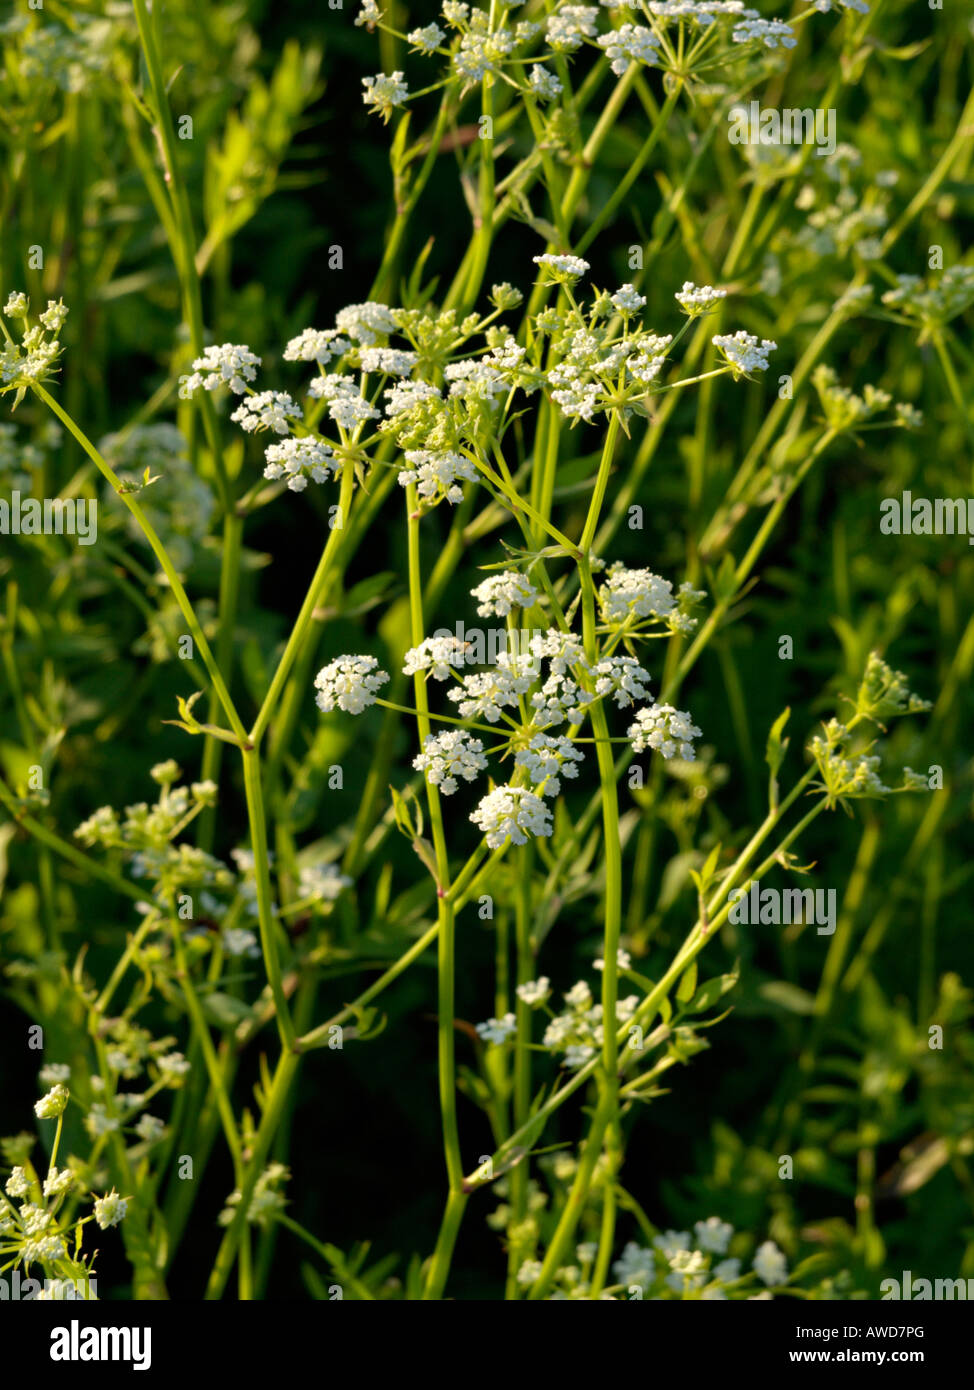 Skirret (Sium sisarum) Stock Photo